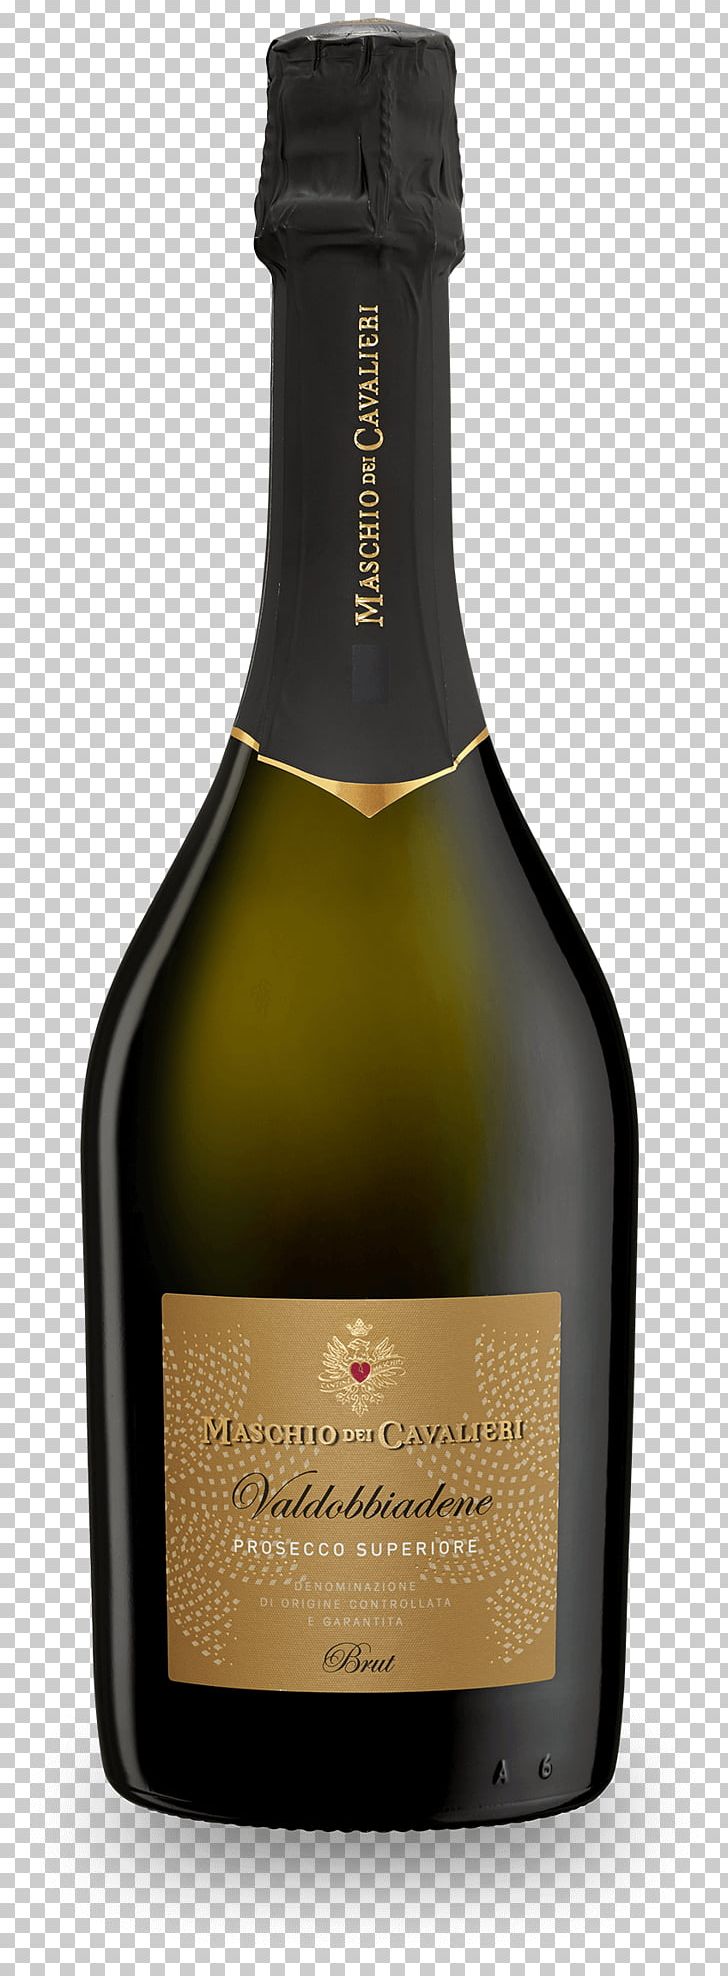 Champagne Valdobbiadene Prosecco Wine Colbertaldo PNG, Clipart, Alcoholic Beverage, Bottle, Champagne, Conegliano, Dessert Wine Free PNG Download